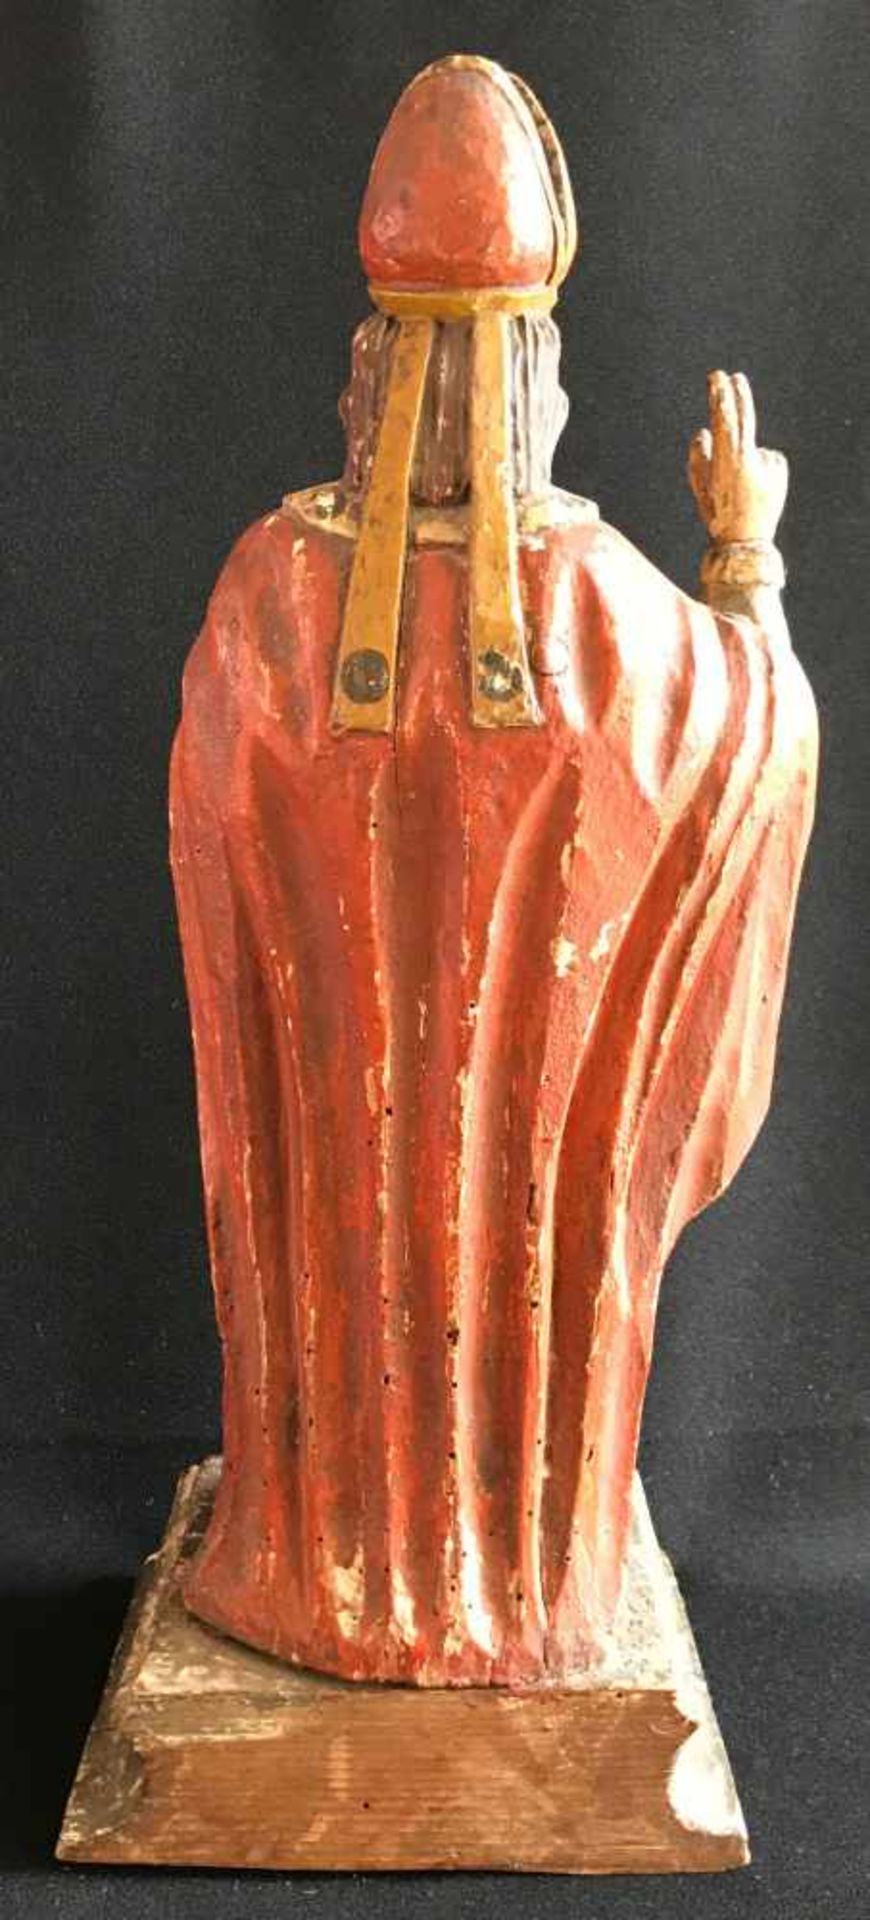 Bischof mit Segensgestus, böhmisch?, 1. Hälfte 19. Jh., Holz, farbig gefasst, H. 46 cm, - Bild 2 aus 4